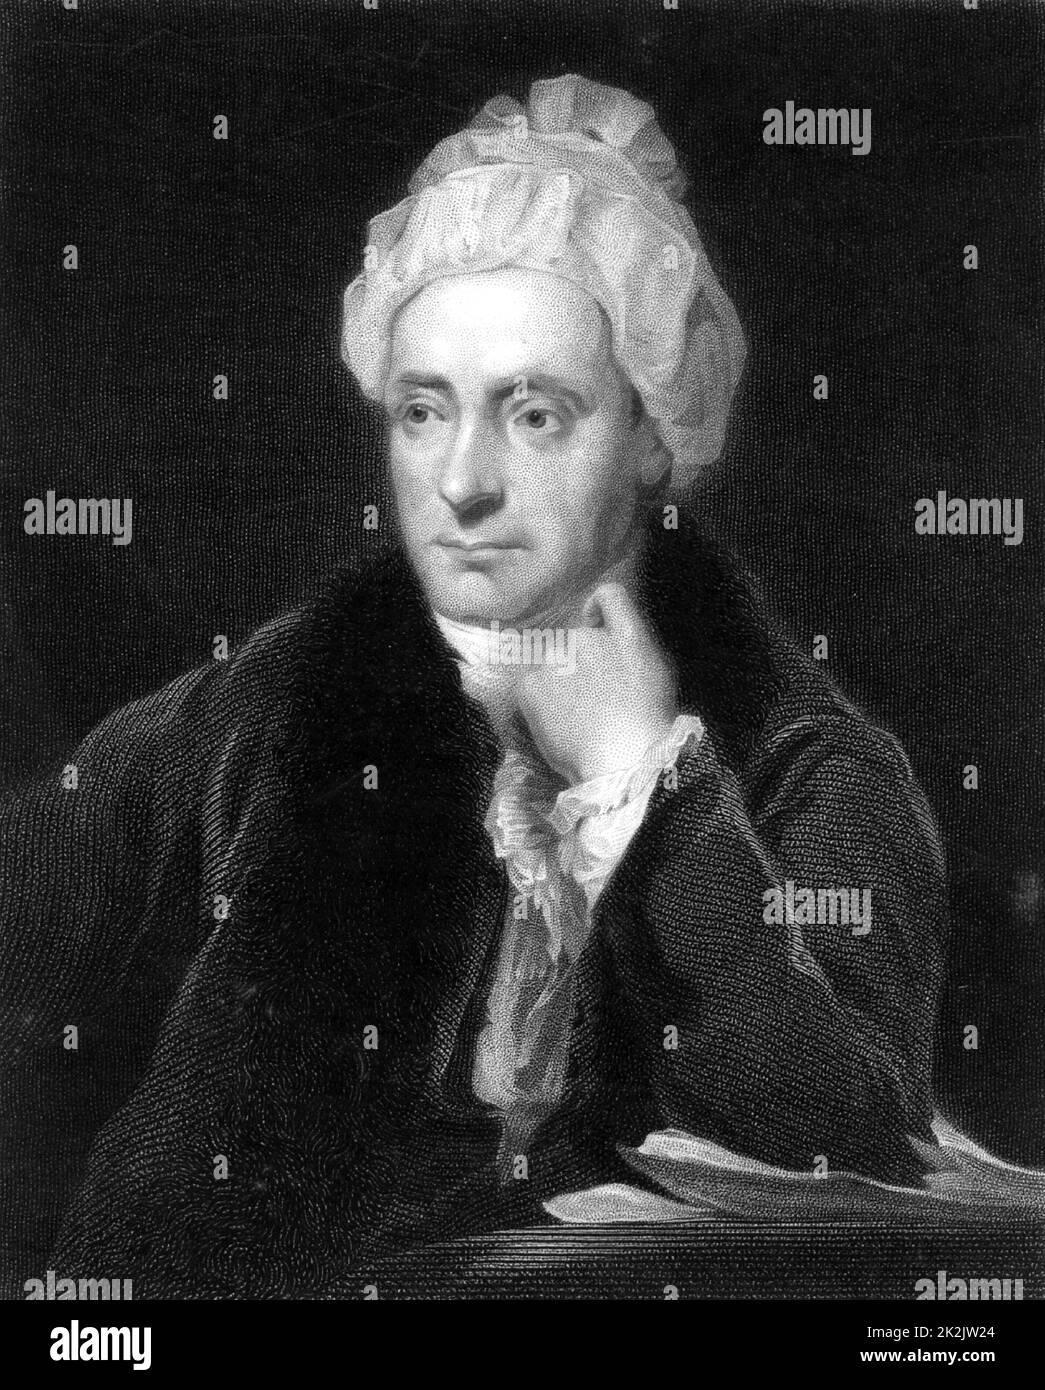 William Cowper (1731-1800) poète anglais, né à Great Berkhamstead, Hertfordshire, et installé à Olney, Buckinghamshire. Poète de la renaissance évangélique et de la nature, avec John Newton, le curate d'Olney, il publie les hymnes d'Olney (1779). Gravure de 'The Gallery of Portraitss' vol, V de Charles Knight (Londres, 1835). Banque D'Images